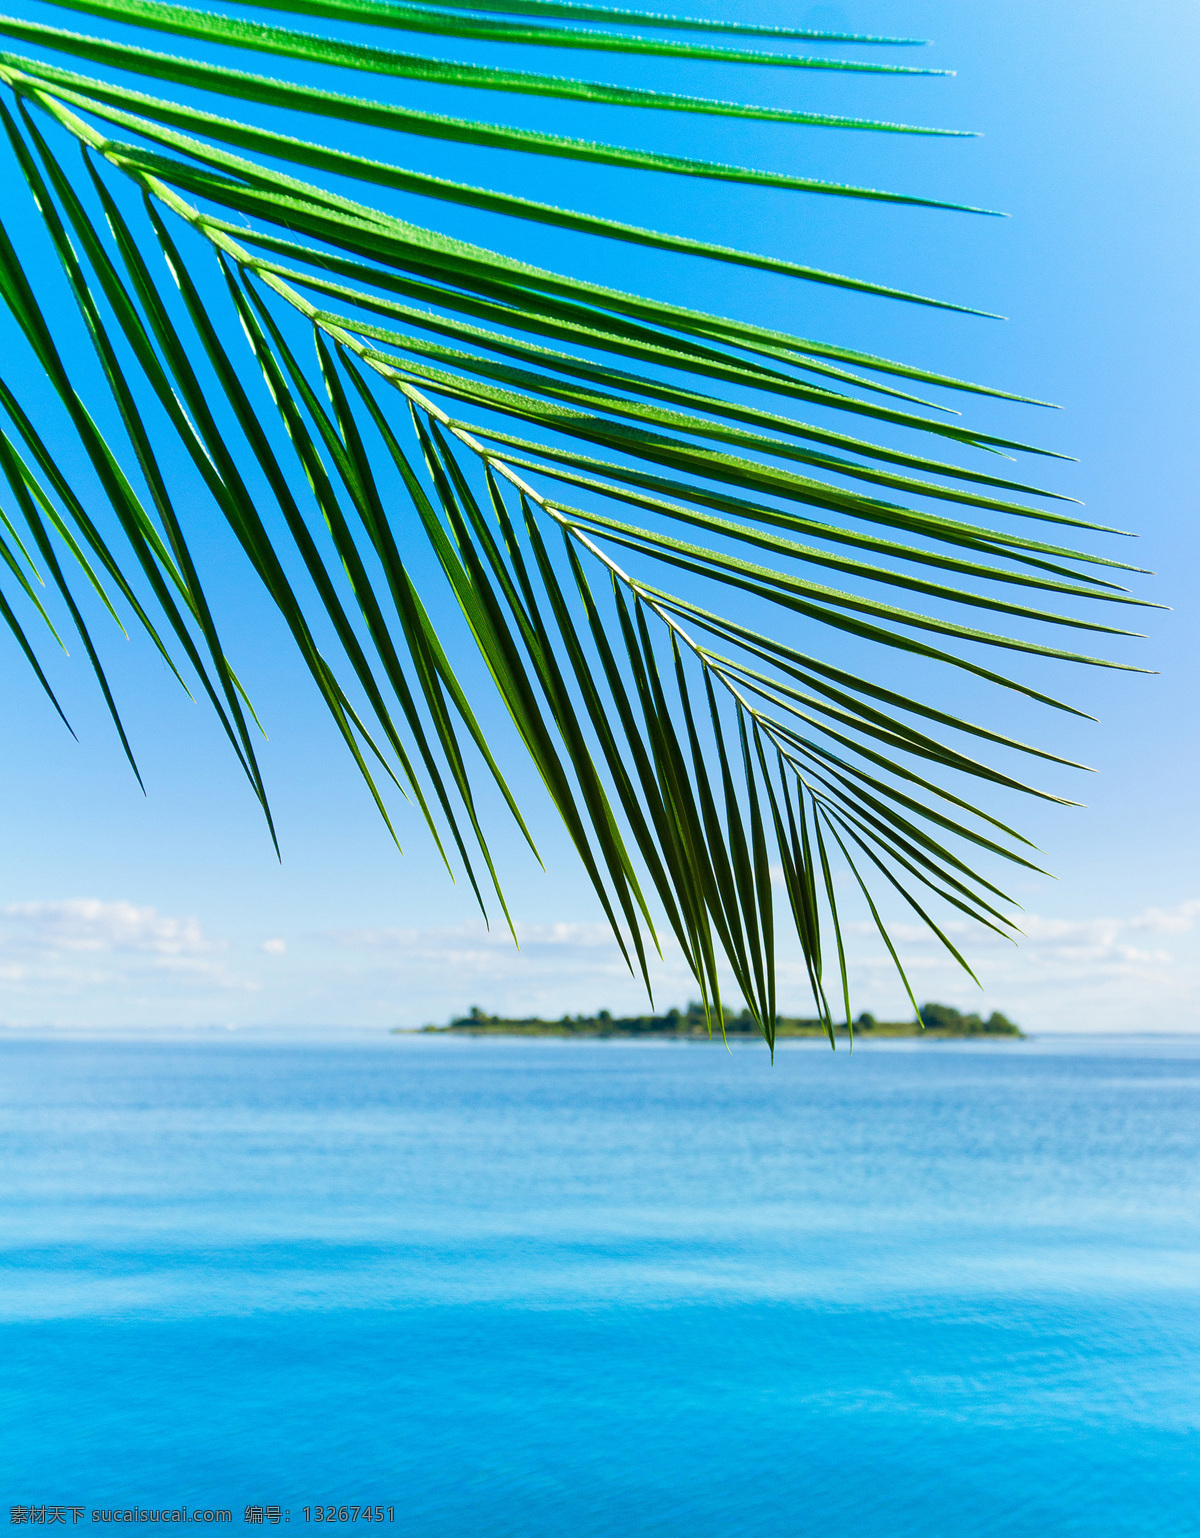 大海 自然风景 摄影图片 大海风景 高清图片 jpg图片 椰树 平静的海面 风景 蓝天白云 清澈的海水 小岛 大海图片 风景图片